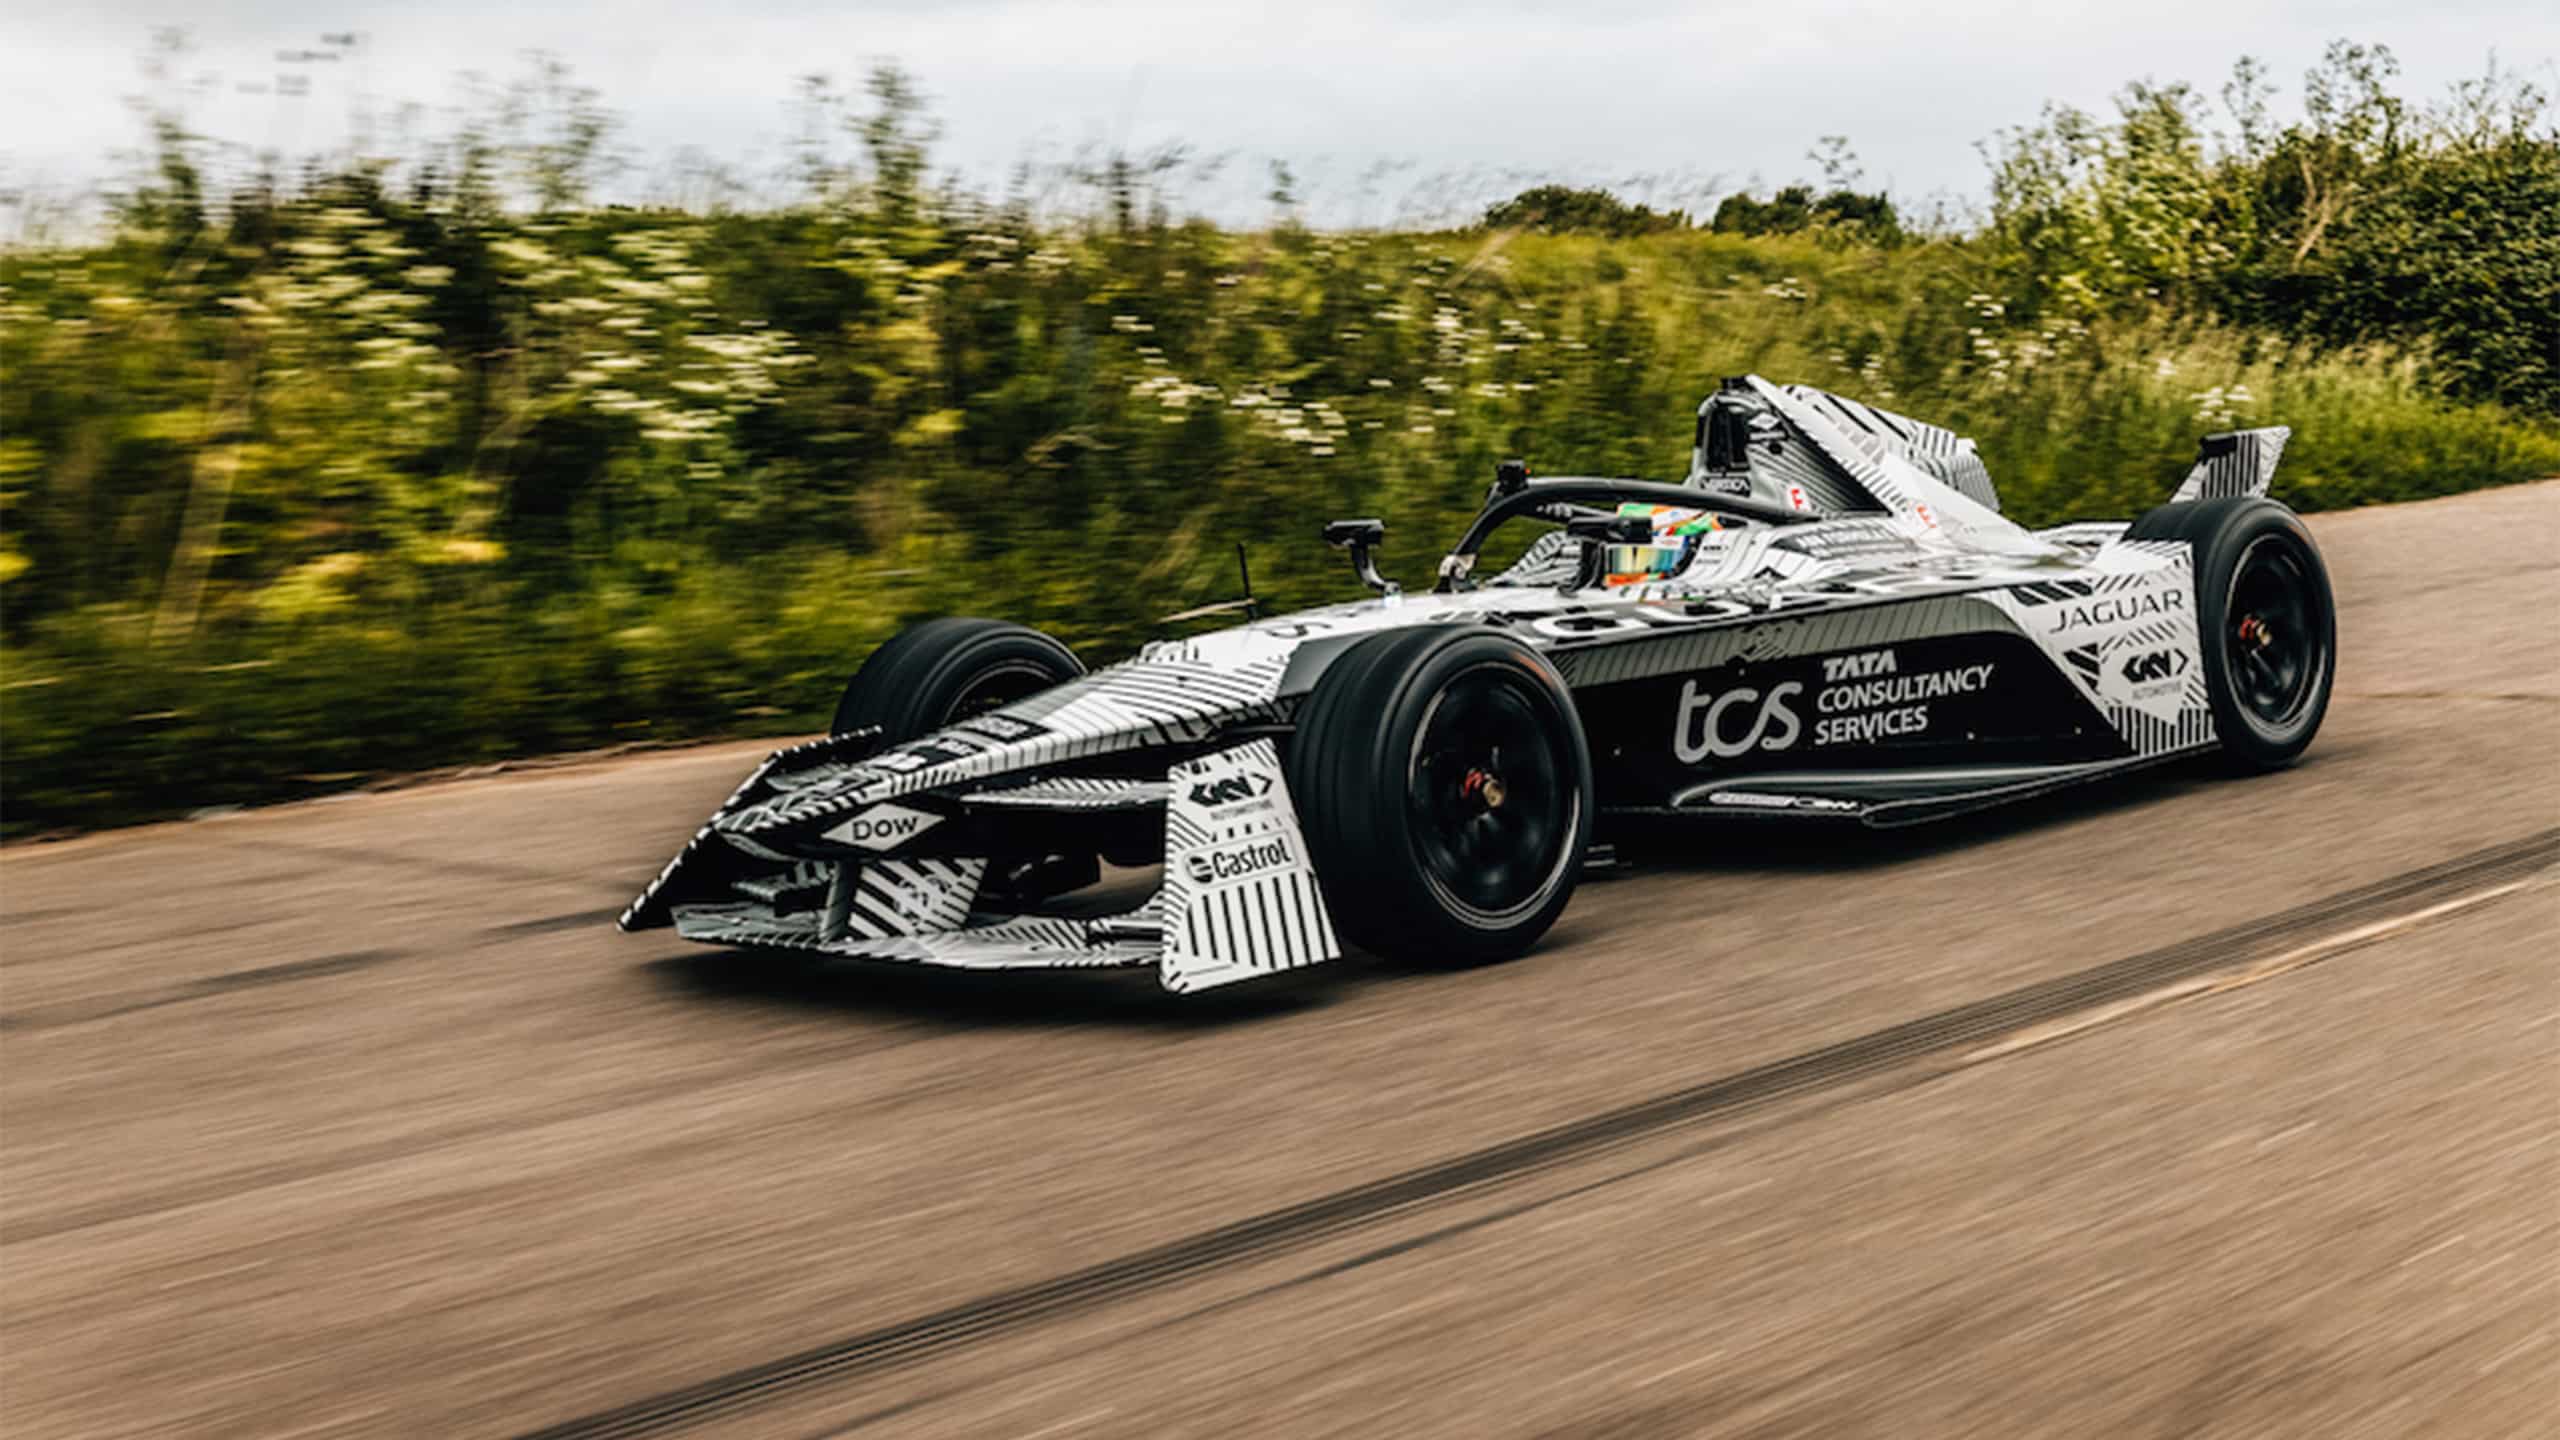 Jaguar I-TYPE Formula E racing car